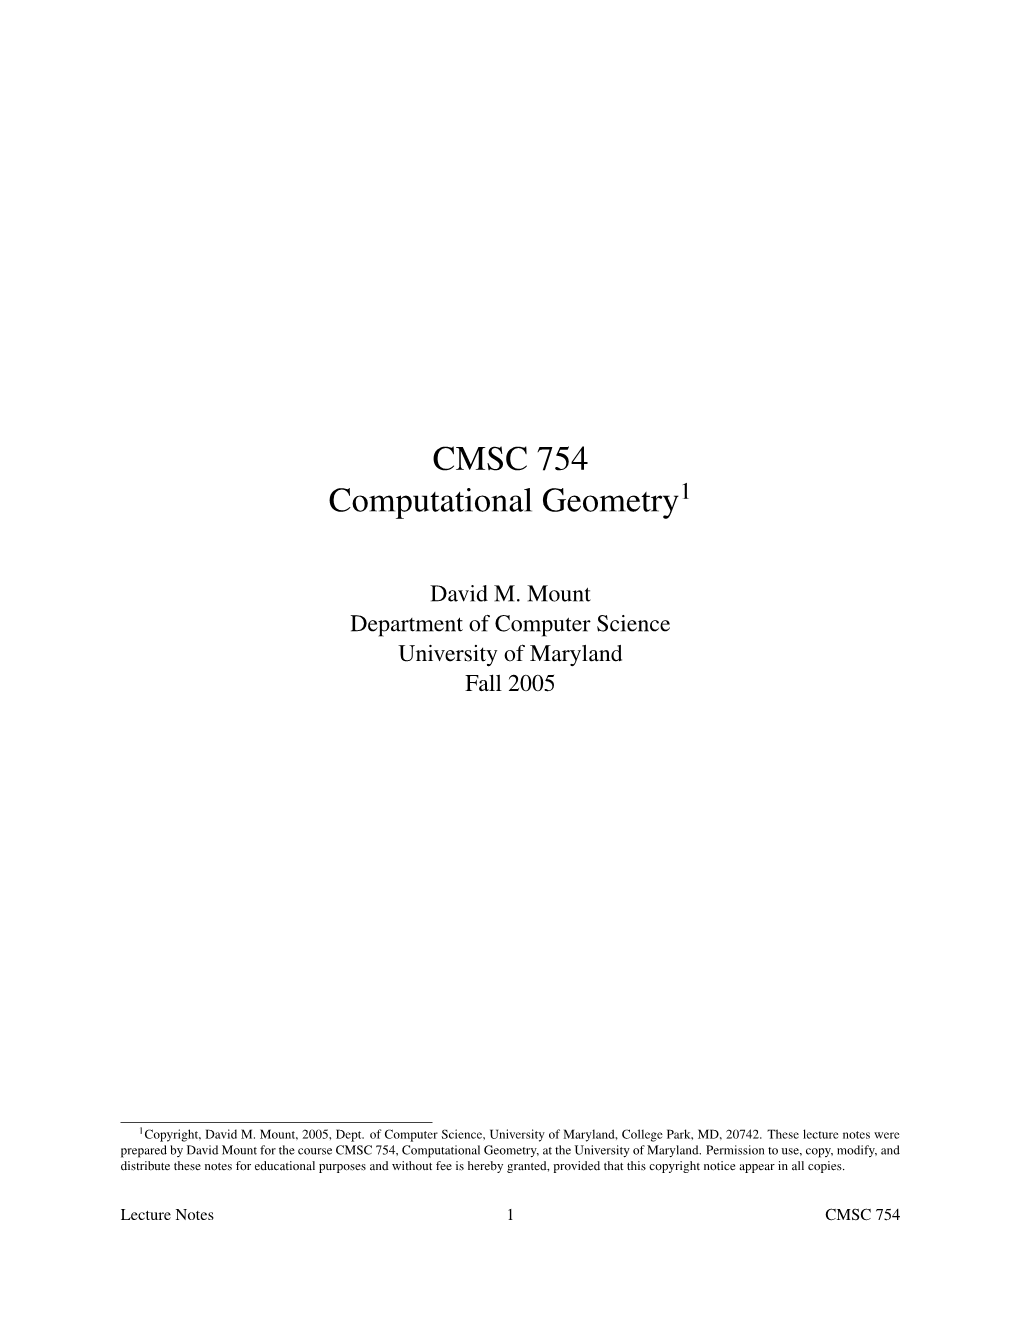 CMSC 754 Computational Geometry1